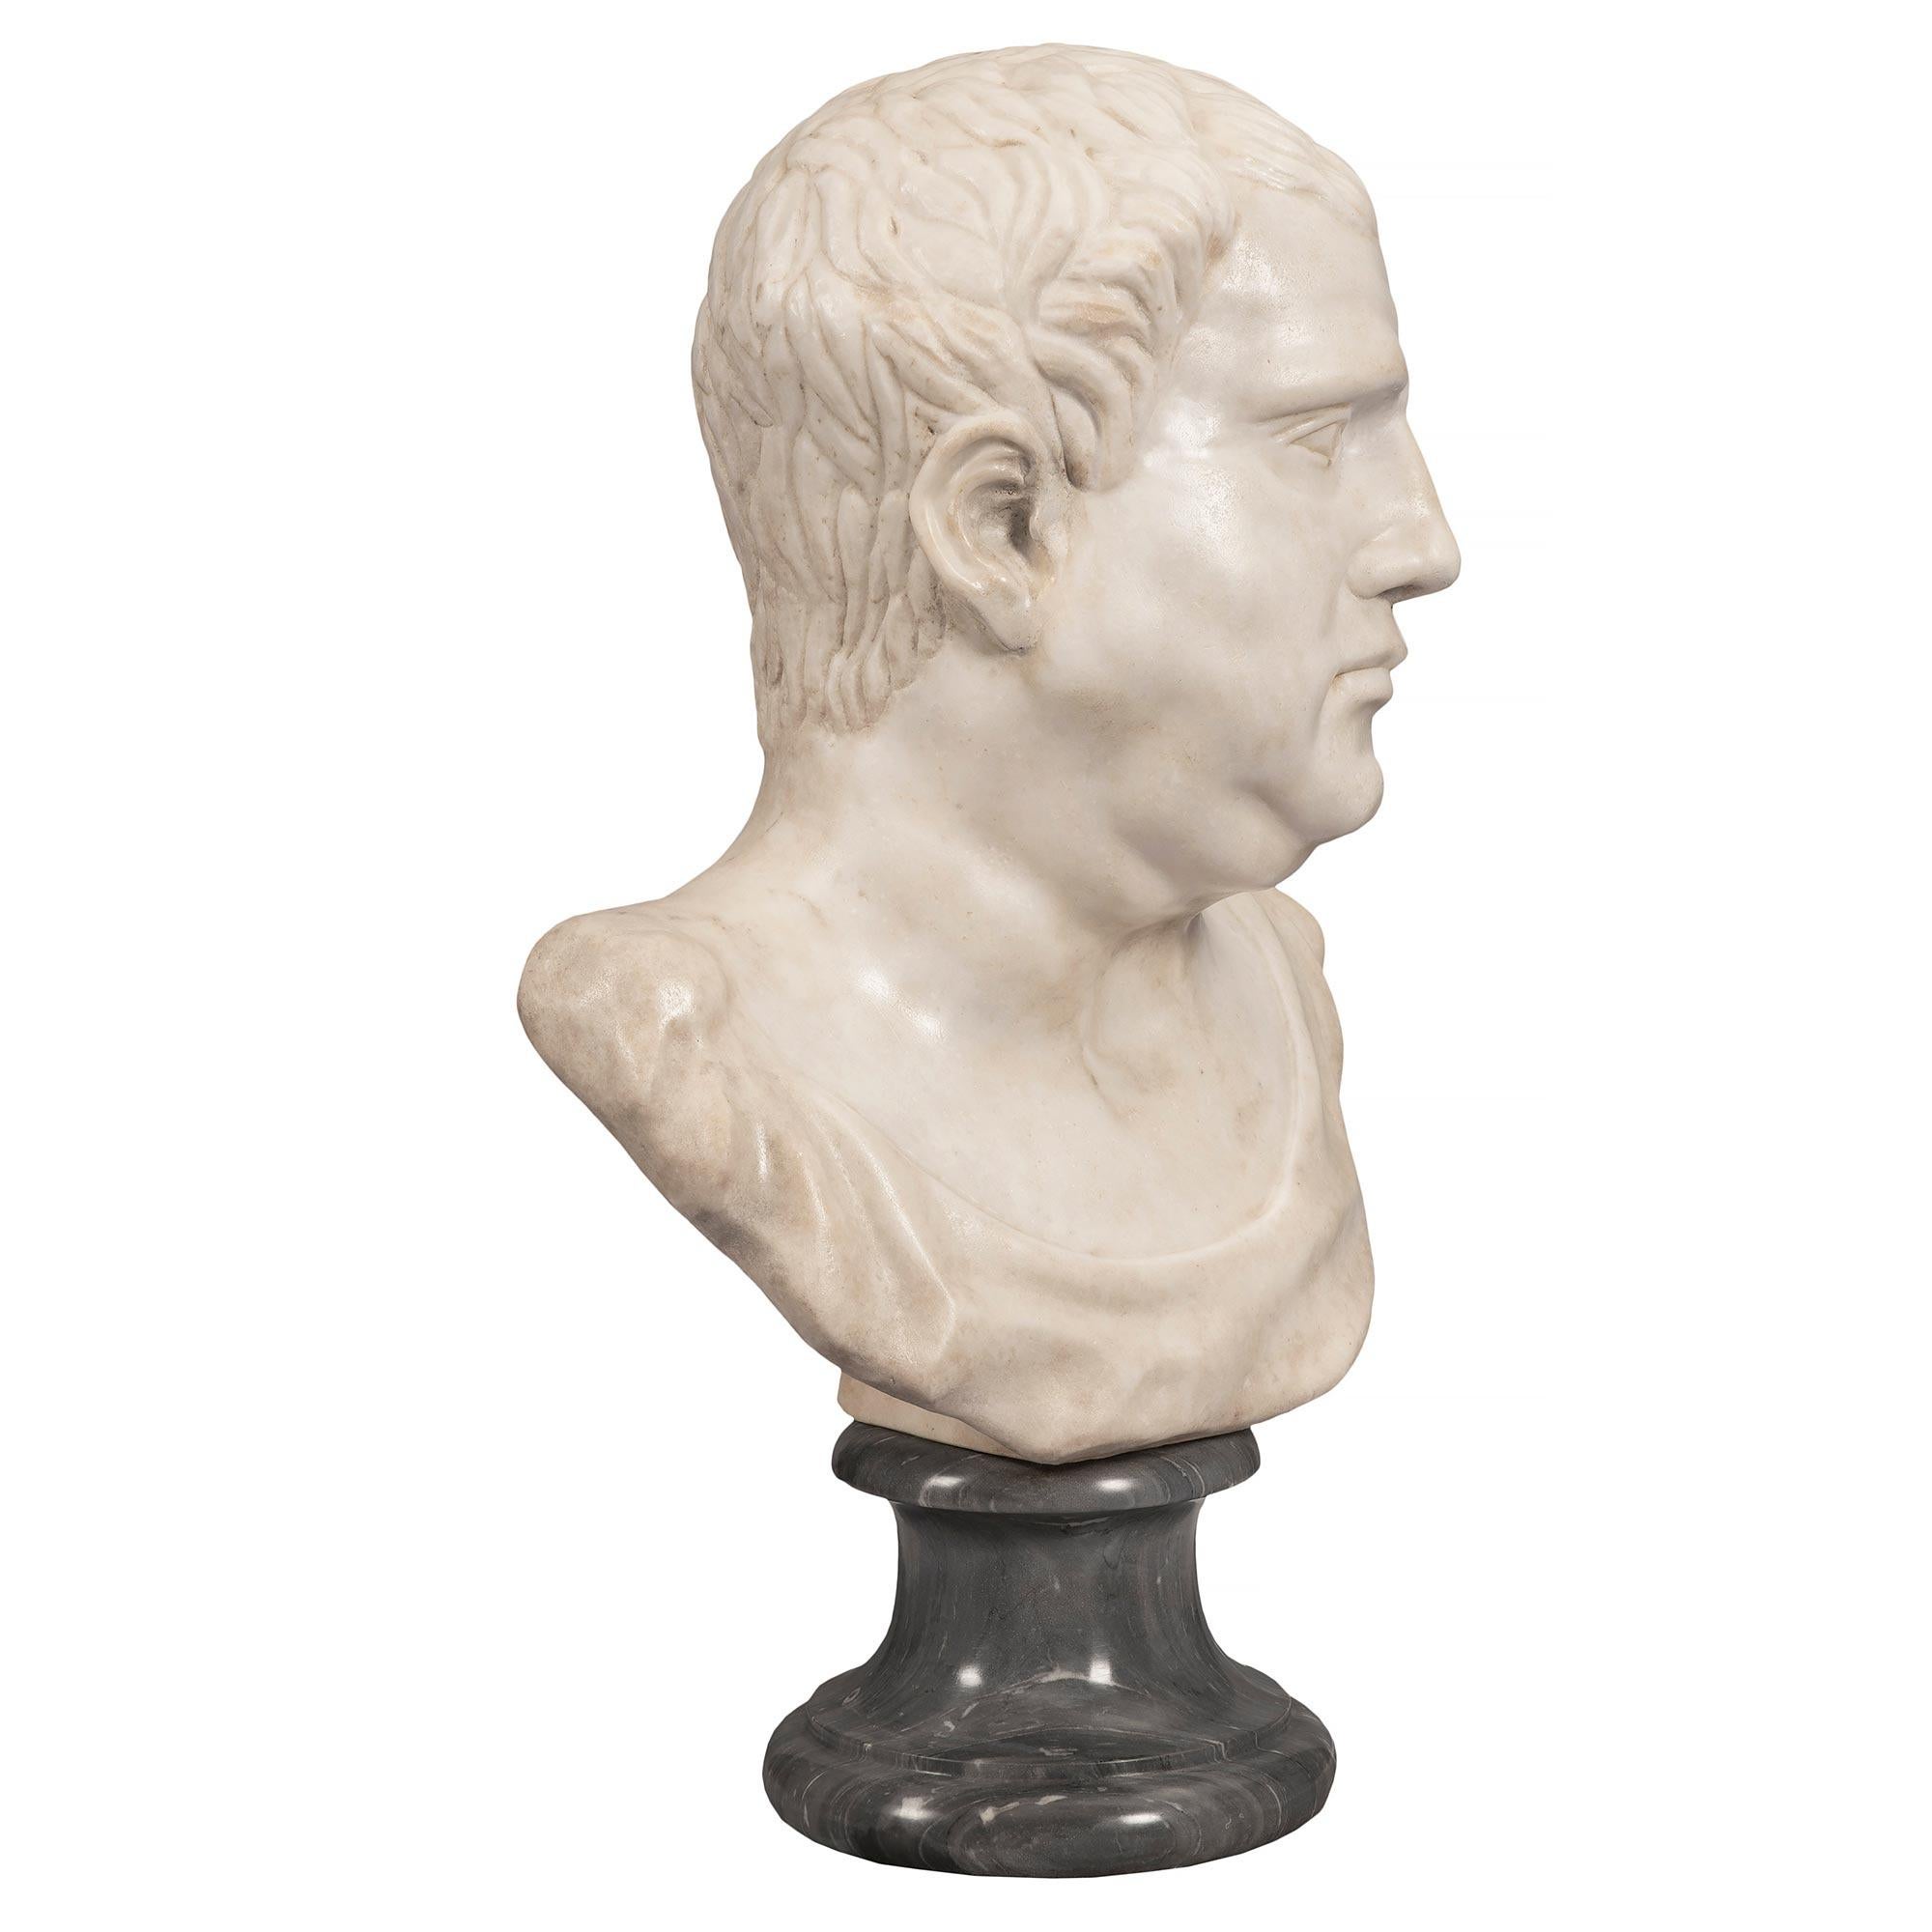 Magnifique buste d'empereur romain en marbre blanc de Carrare, de grande qualité, datant du début du XIXe siècle. Le buste est surmonté d'une base circulaire en marbre Bleu Turquin avec une bordure décorative tachetée. Le buste magistralement